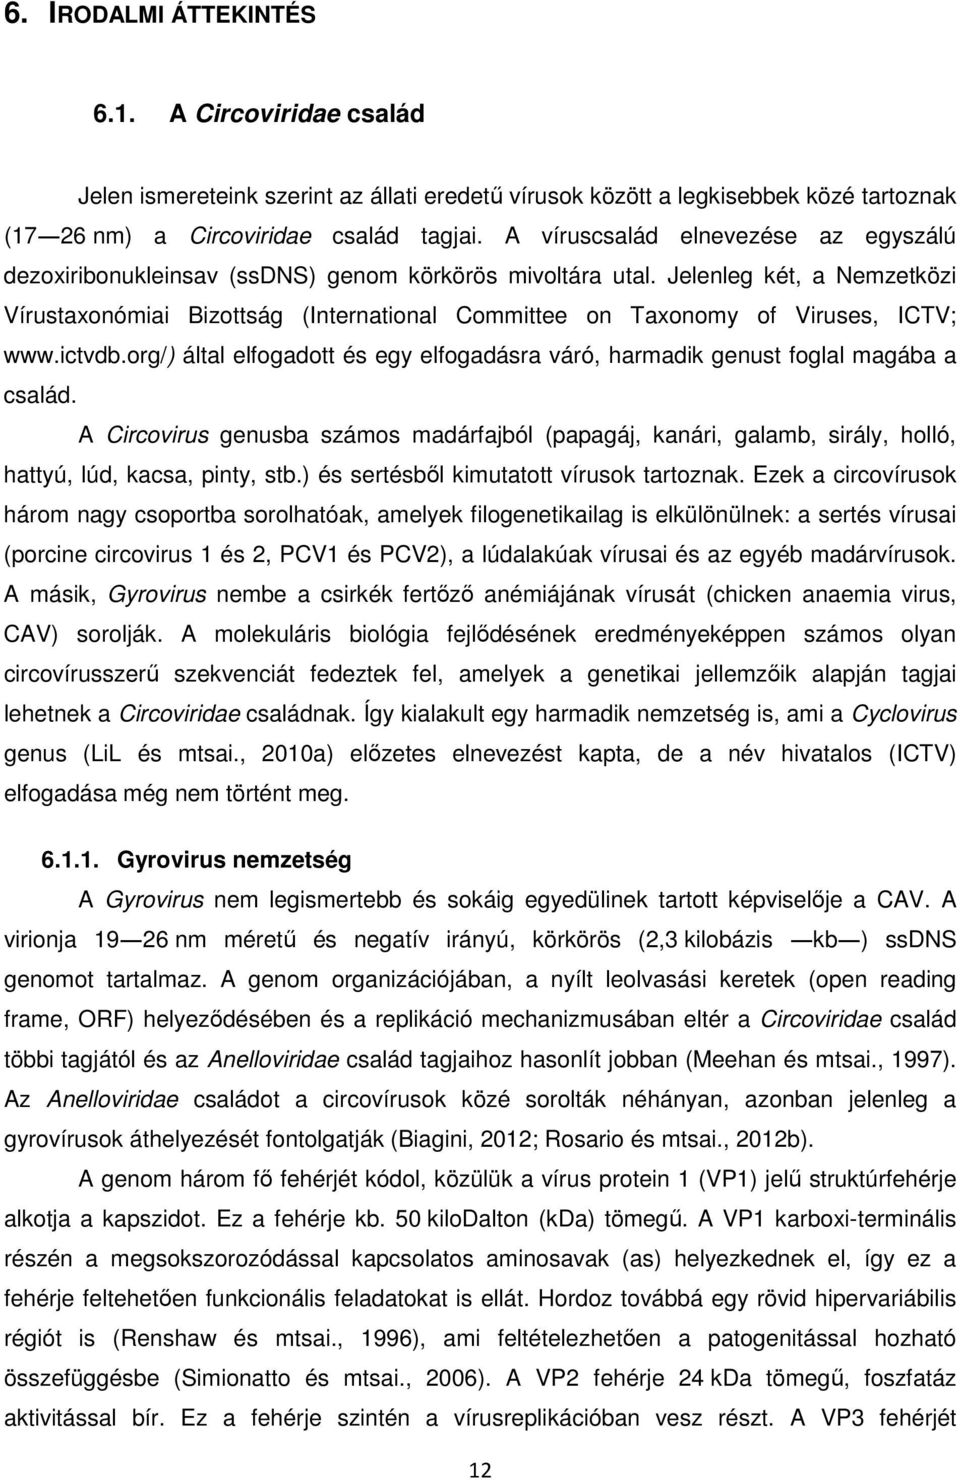 Jelenleg két, a Nemzetközi Vírustaxonómiai Bizottság (International Committee on Taxonomy of Viruses, ICTV; www.ictvdb.